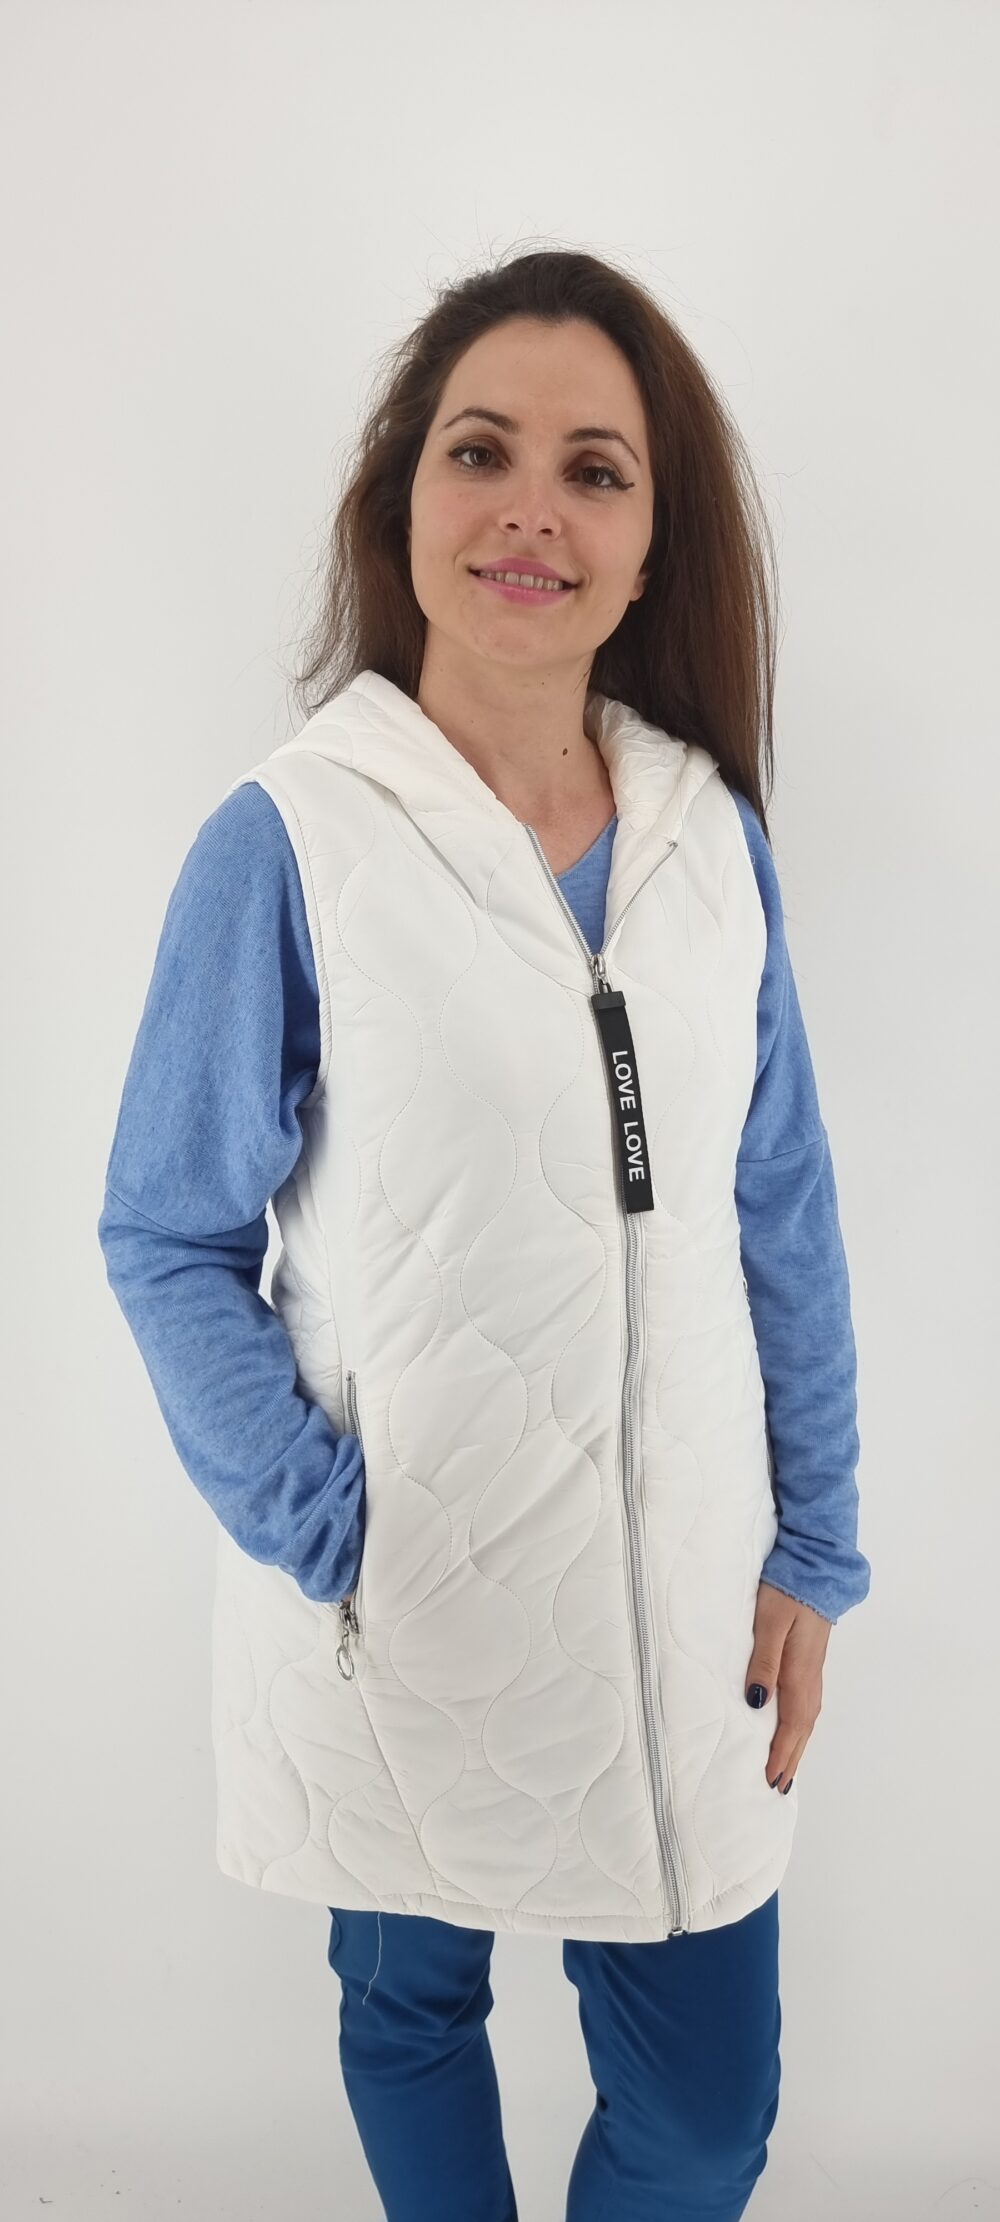 Sleeveless long jacket with hood white